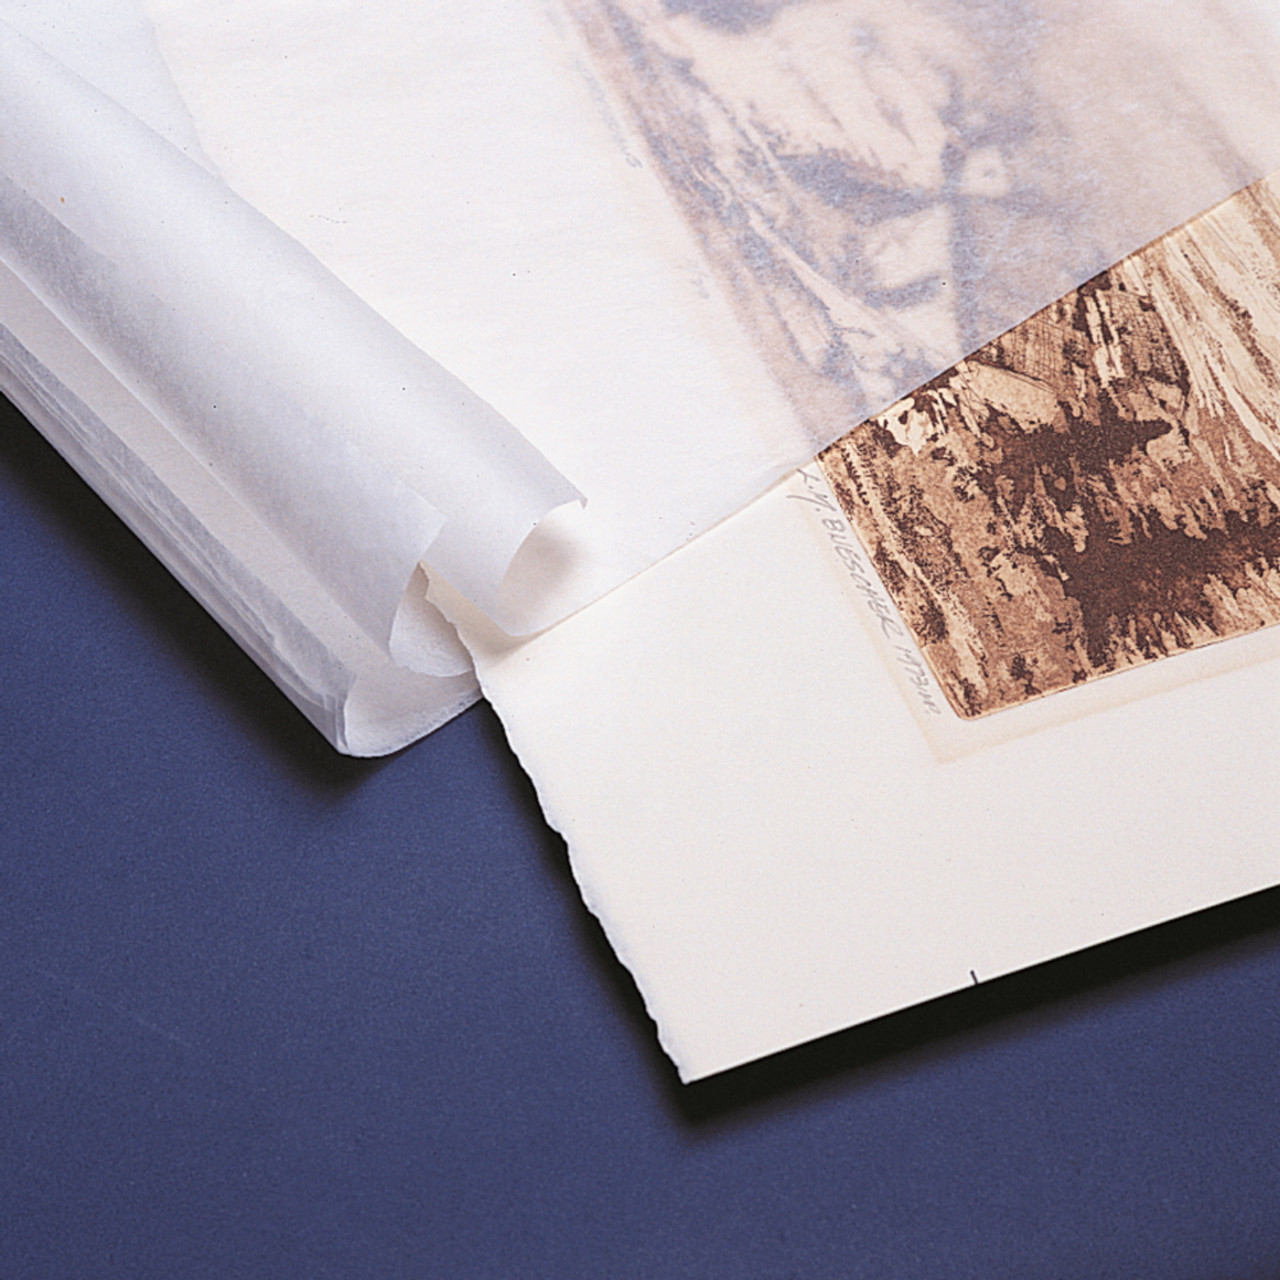 Shredded Archival Quality Tissue - Hollinger Metal Edge